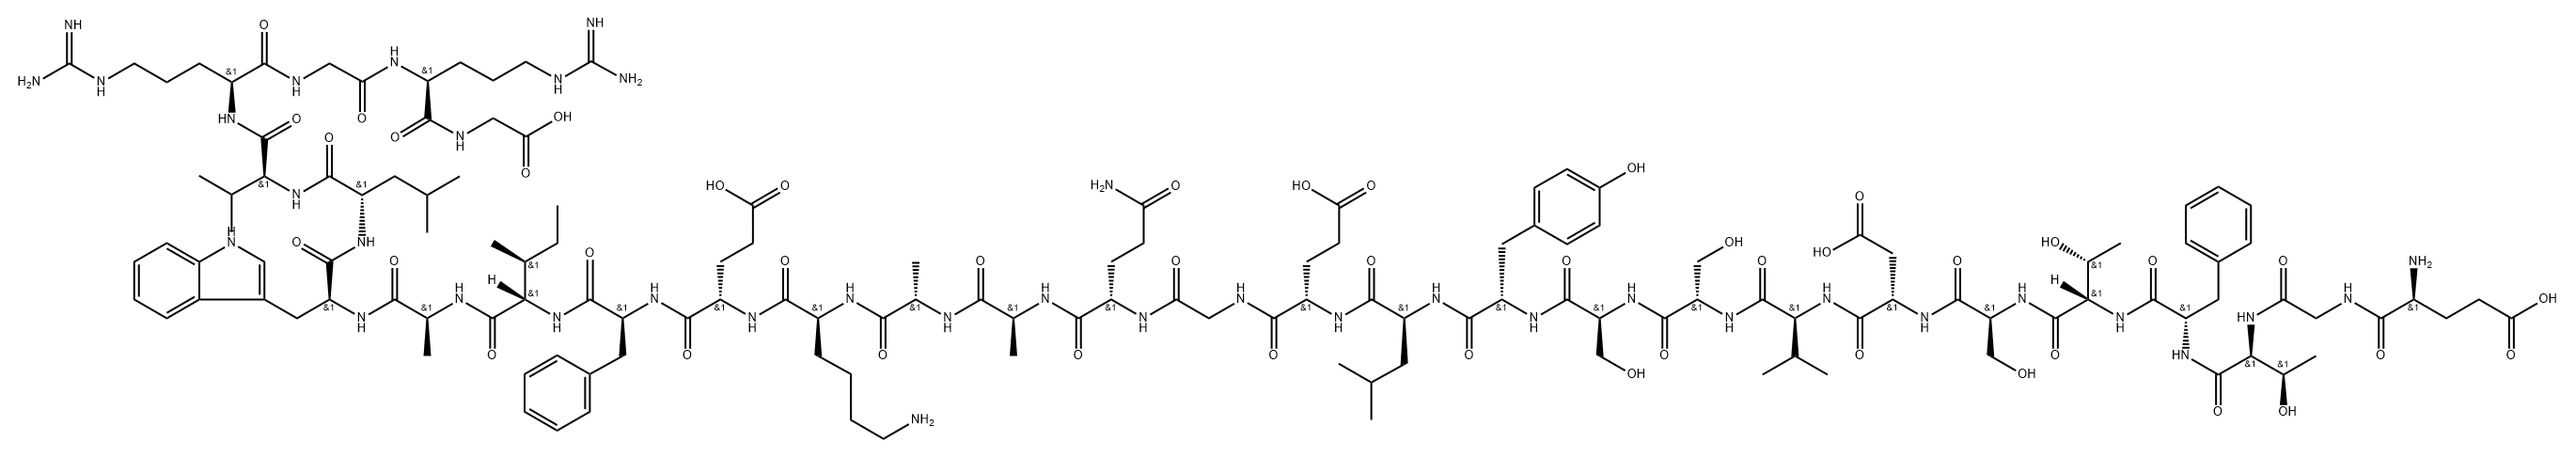 Glycine, L-α-glutamylglycyl-L-threonyl-L-phenylalanyl-L-threonyl-L-seryl-L-α-aspartyl-L-valyl-L-seryl-L-seryl-L-tyrosyl-L-leucyl-L-α-glutamylglycyl-L-glutaminyl-L-alanyl-L-alanyl-L-lysyl-L-α-glutamyl-L-phenylalanyl-L-isoleucyl-L-alanyl-L-tryptophyl-L-leucyl-L-valyl-L-arginylglycyl-L-arginyl-